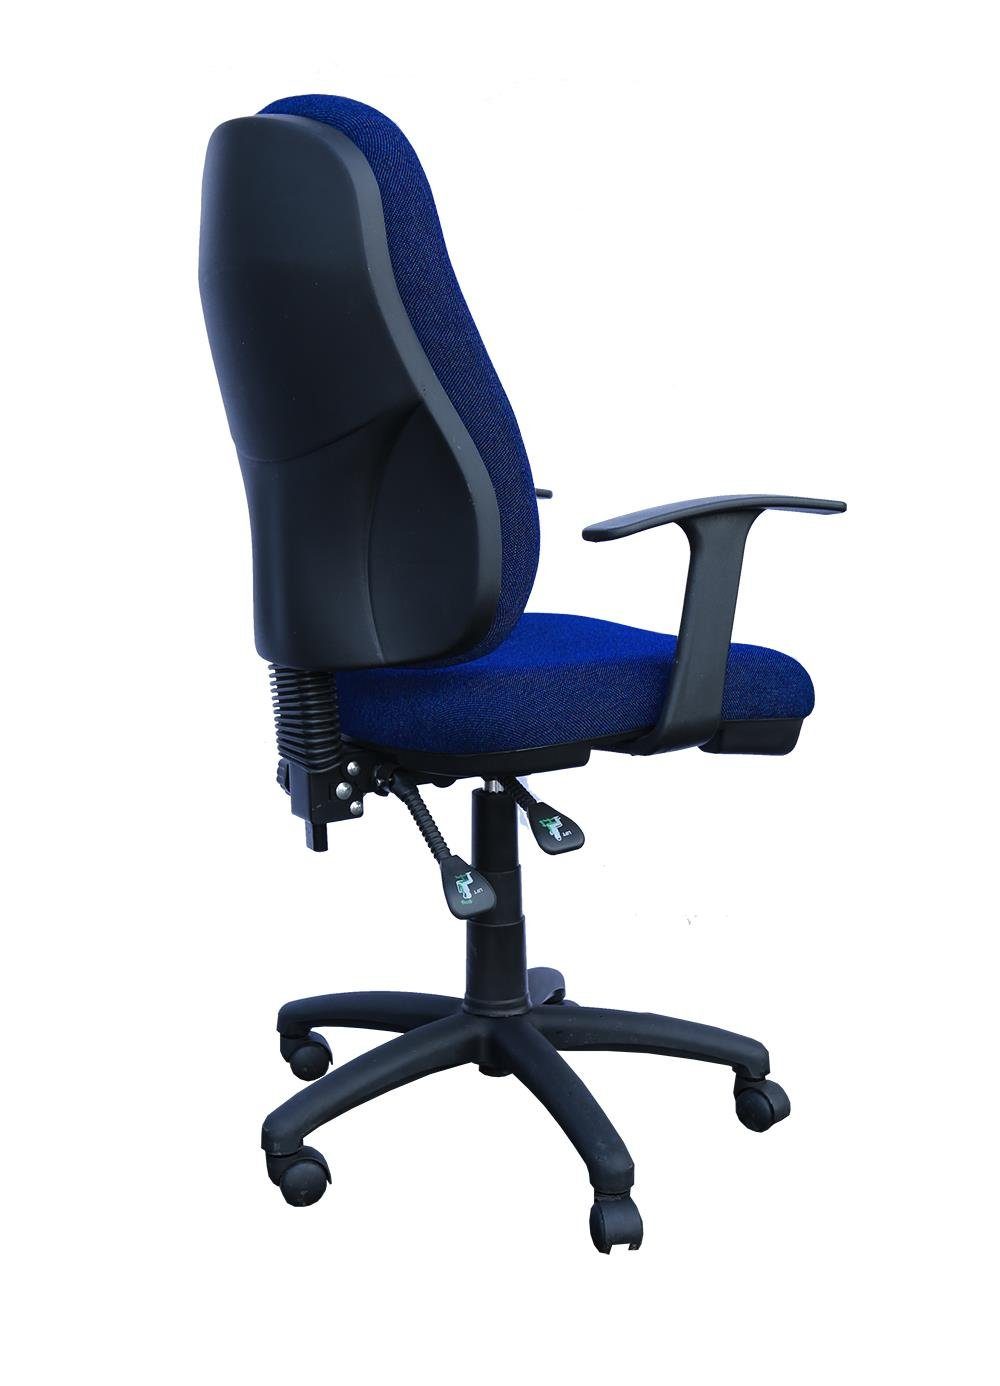 Bandscheibensitz blau mit ergonomisch Armlehnen) (Bürodrehstuhl geformt Steelboxx Bürodrehstuhl Drehstuhl